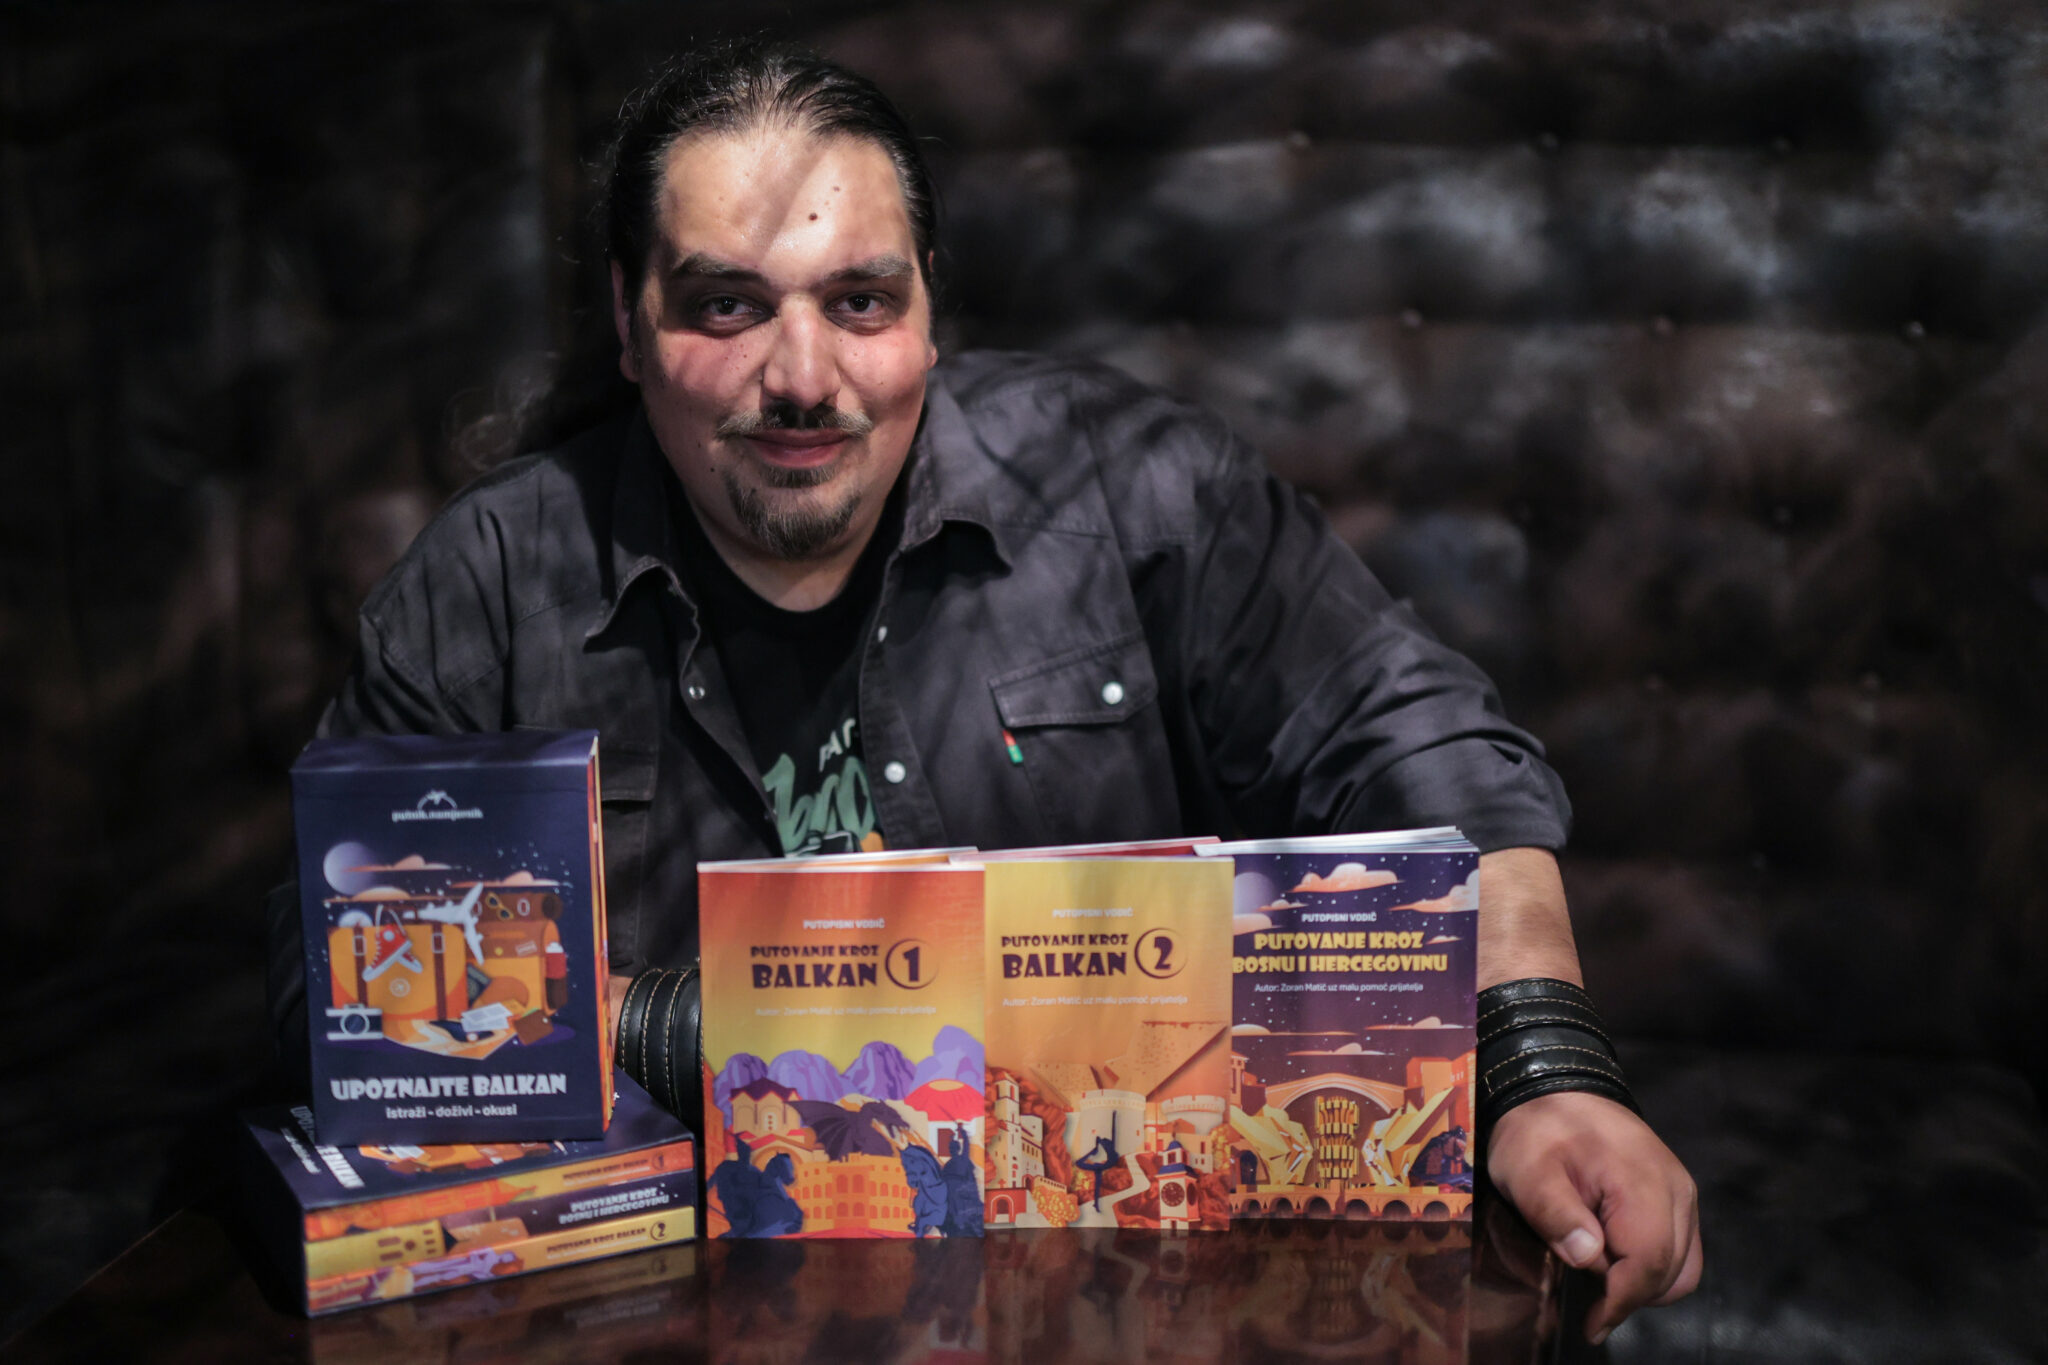 Banjalučki putopisac Zoran Matić na stranicama knjiga predstavio putovanje kroz Balkan